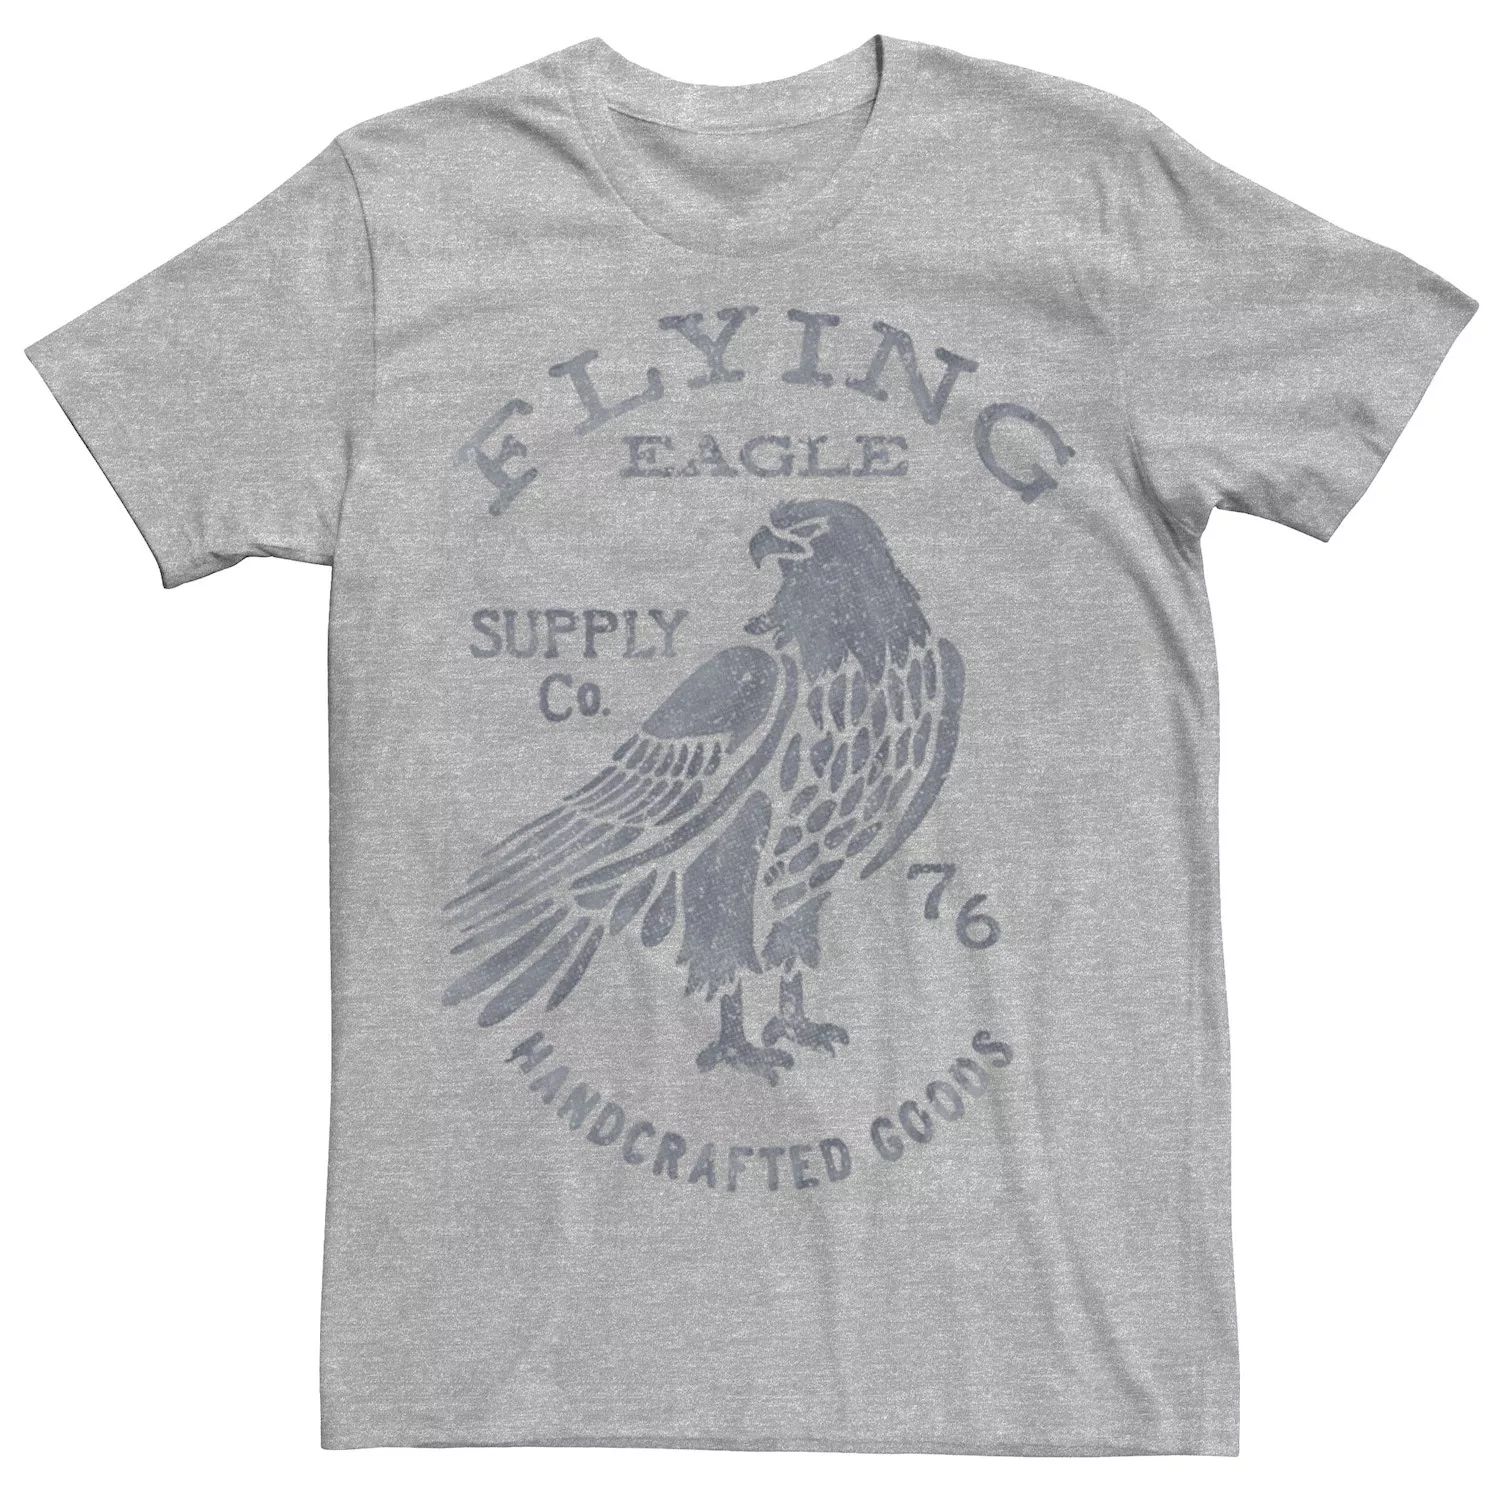 Мужская футболка с этикеткой Flying Eagle Supply Co. Licensed Character